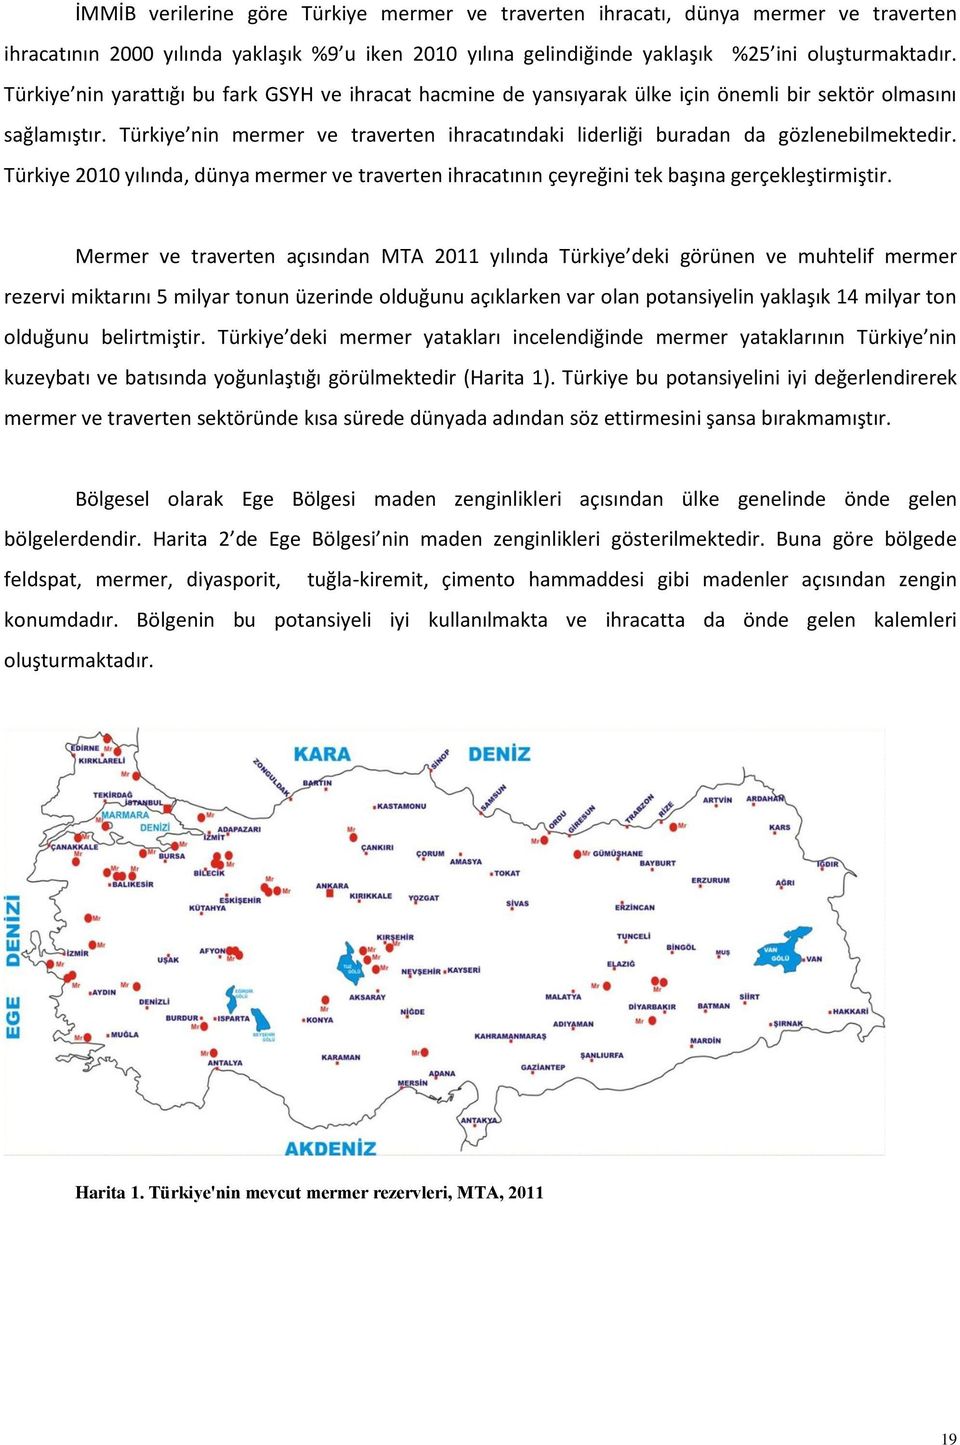 Türkiye nin mermer ve traverten ihracatındaki liderliği buradan da gözlenebilmektedir. Türkiye 2010 yılında, dünya mermer ve traverten ihracatının çeyreğini tek başına gerçekleştirmiştir.